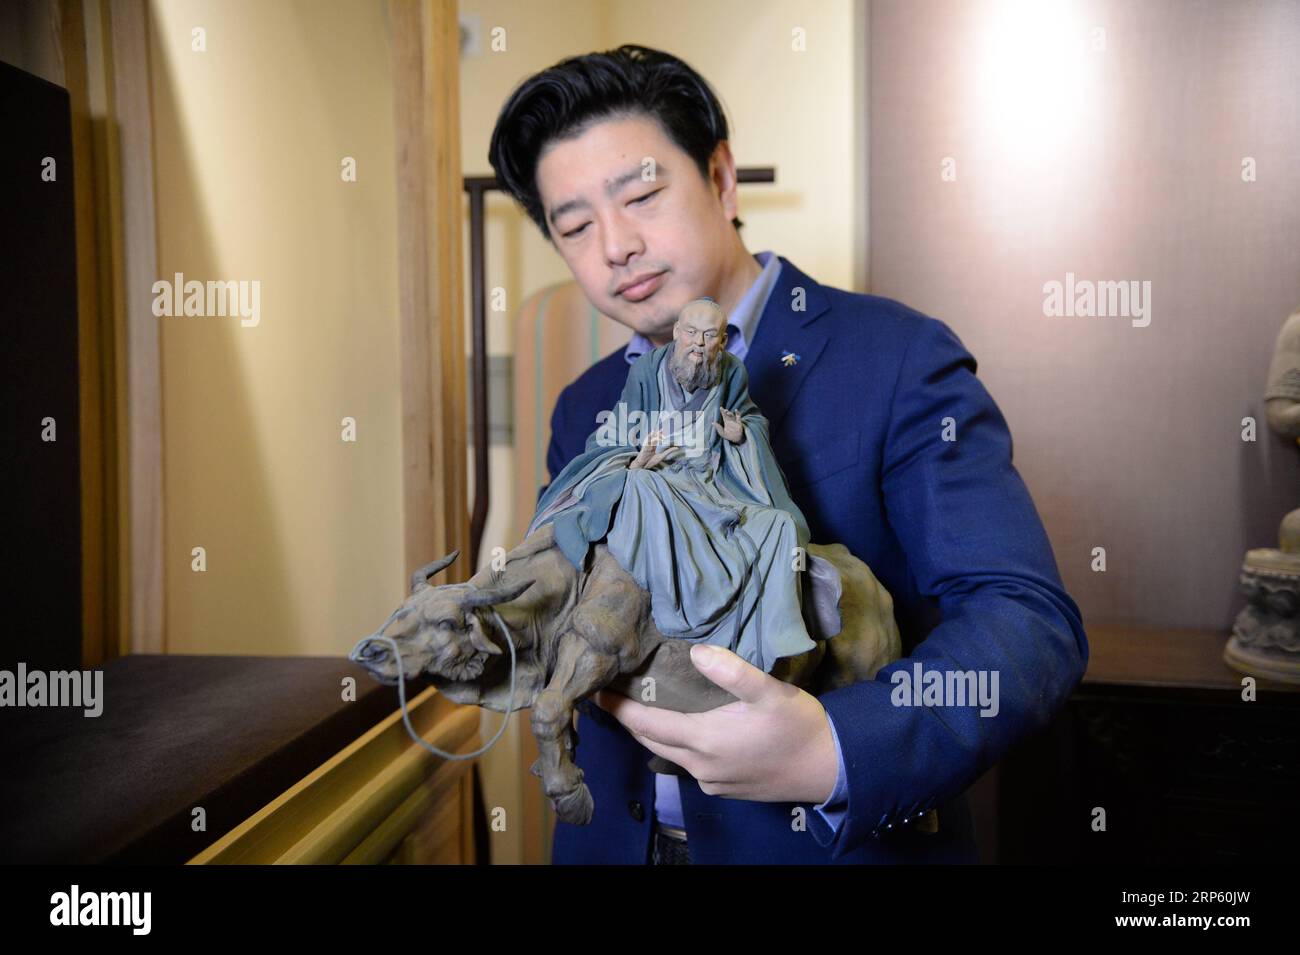 (181229) -- PÉKIN, 29 décembre 2018 (Xinhua) -- Zhang Yu, le fabricant de figurine en argile Zhang de sixième génération, regarde une figurine dans son atelier de la galerie d'art Zhang Figure en argile à Tianjin, dans le nord de la Chine, le 28 décembre 2018. Figure d'argile Zhang est un nom familier de l'art populaire traditionnel en Chine, et une telle œuvre a une histoire de près de 200 ans. Zhang Yu, le fabricant de figurines en argile de sixième génération de sa famille, a pris en charge l’entreprise familiale en 1996, alors qu’il n’avait que 18 ans. Au fil du temps, le métier et la marque ont évolué. Au lieu de fabriquer des figurines et de les vendre comme un vendeur de rue, lui Banque D'Images